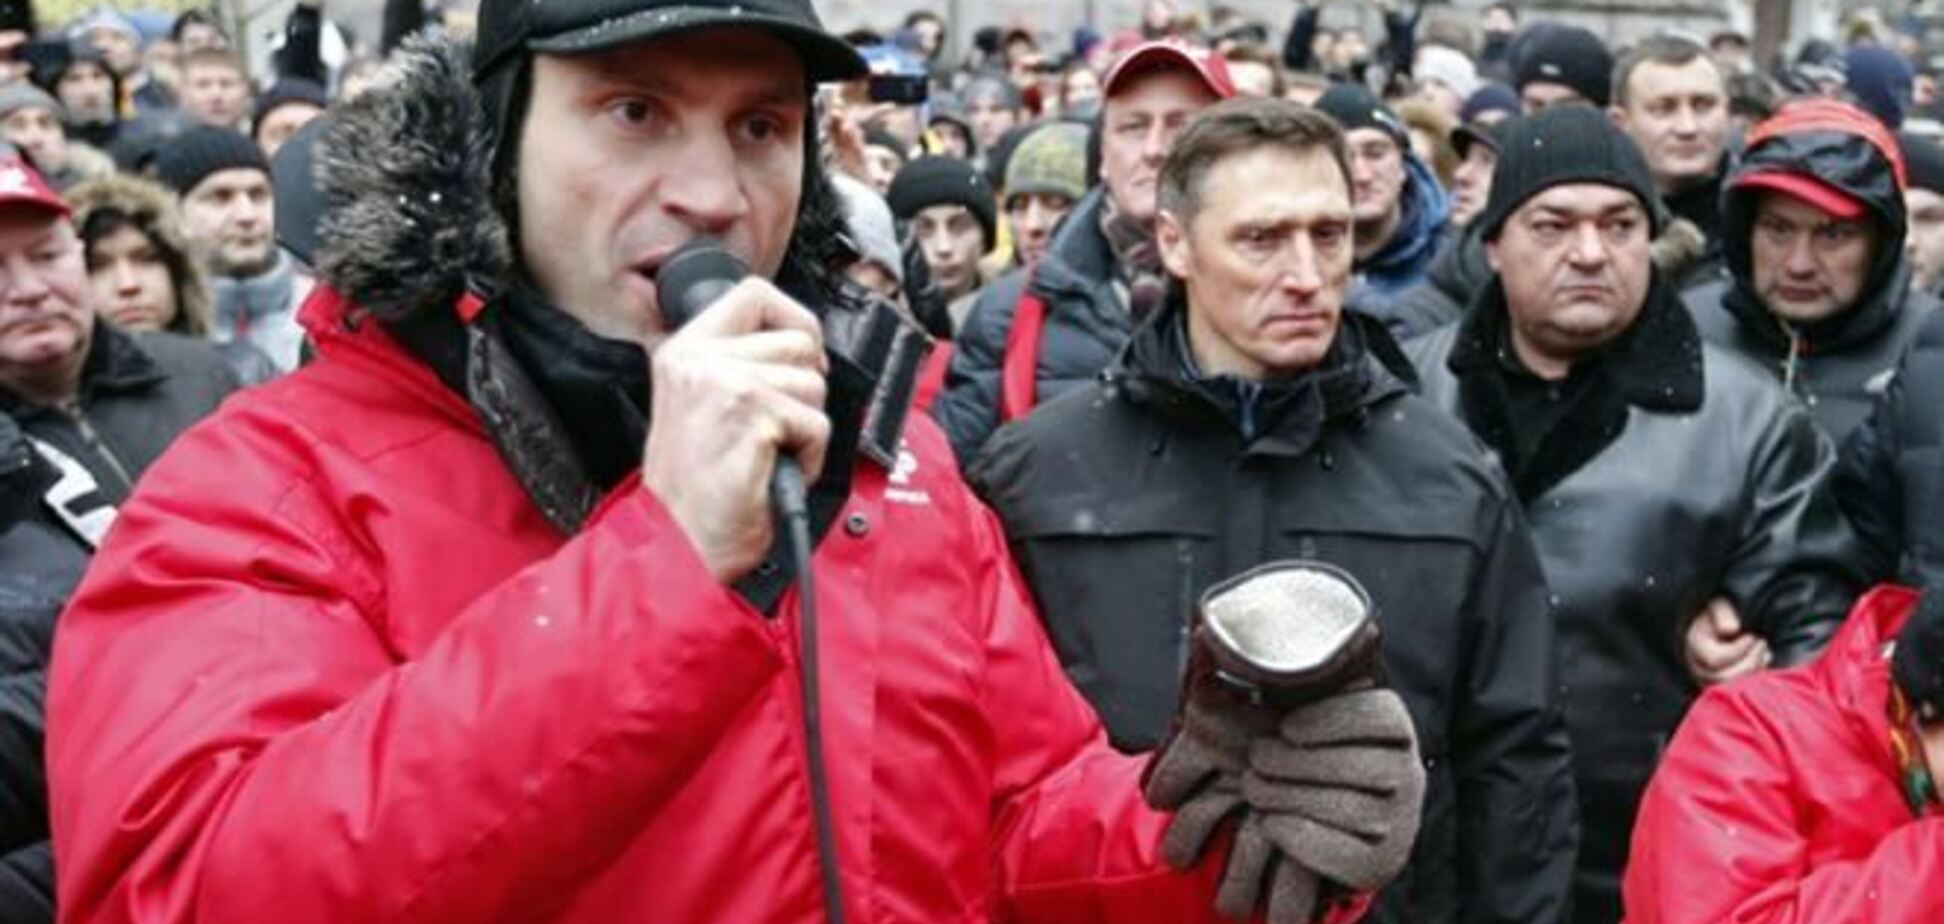  Политологи считают уткой заявление Кличко о том, что на него покушались